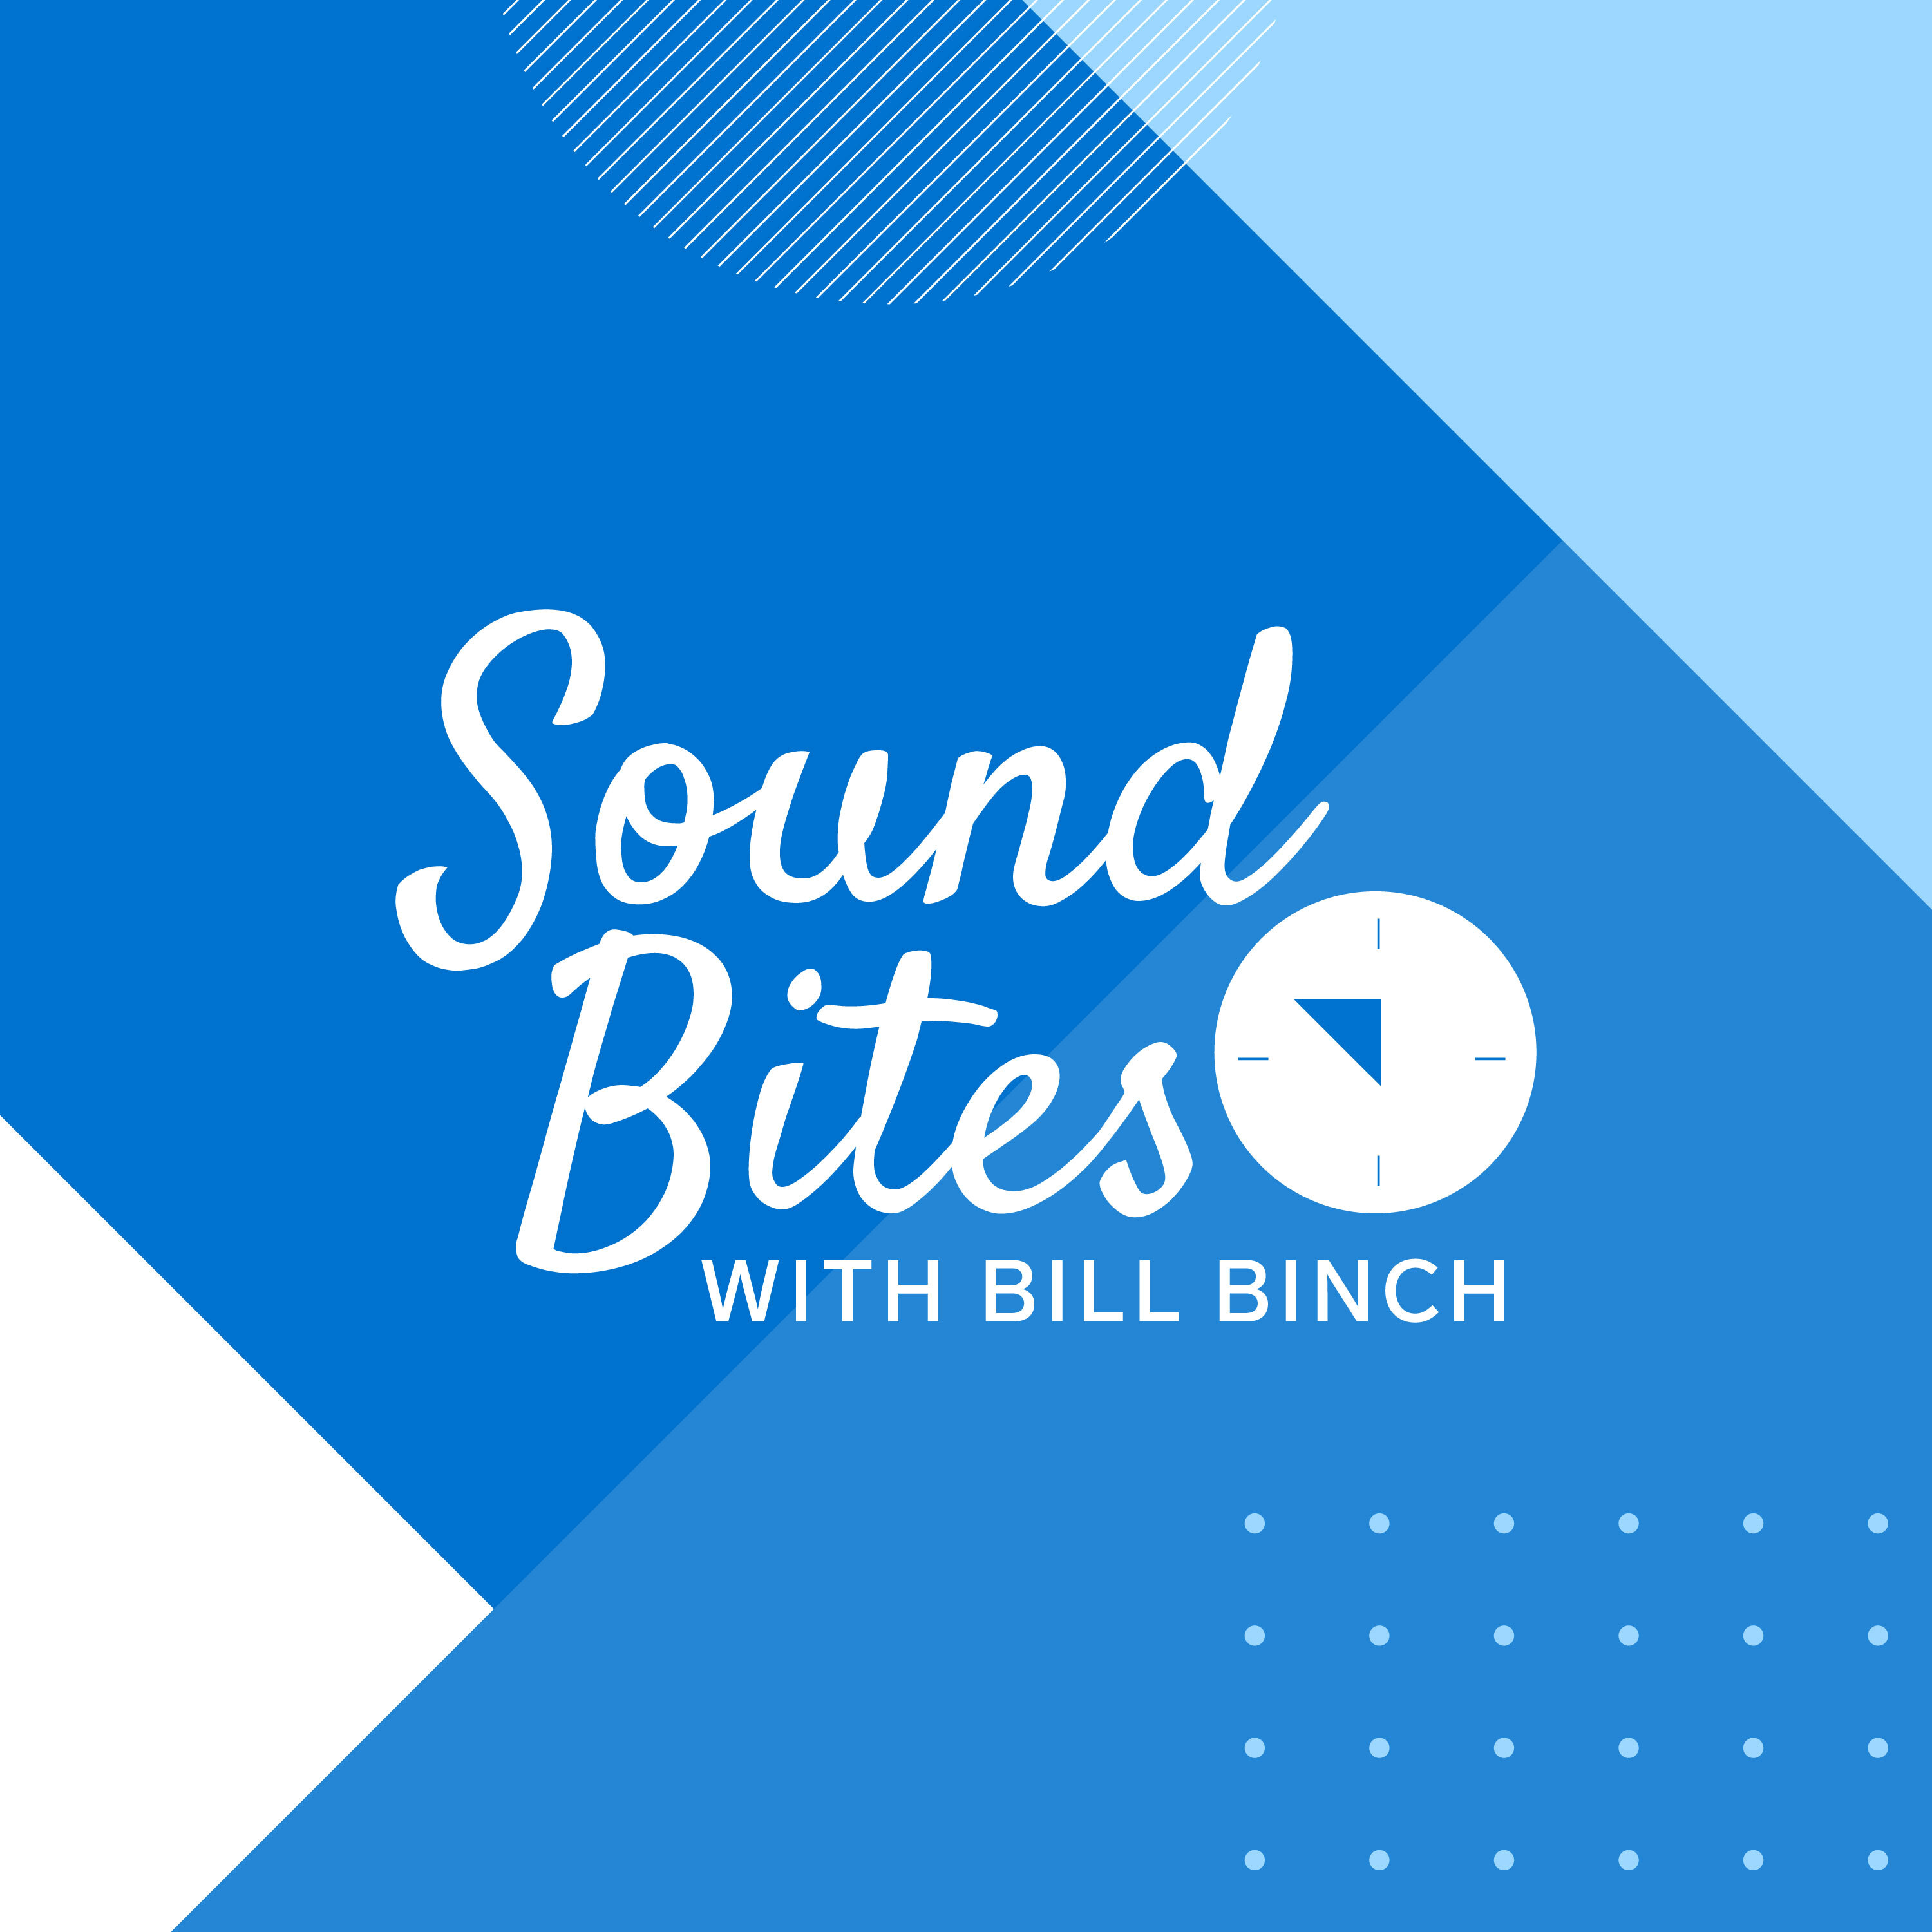 Artwork for Sound Bites with Bill Binch